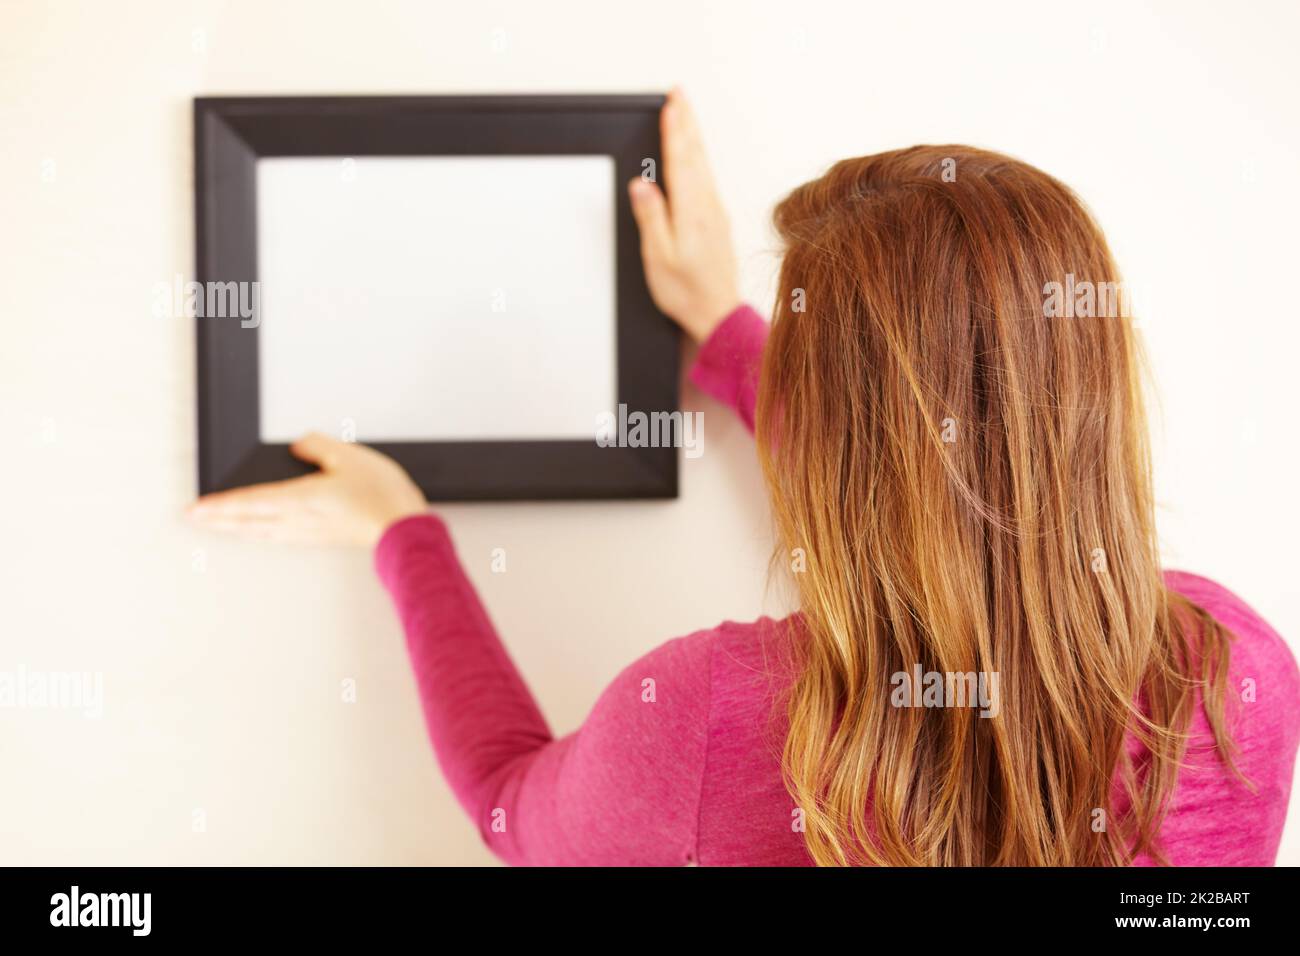 Perfekt im Bild. Rückansicht einer Frau, die einen leeren Rahmen an eine Wand legt. Stockfoto